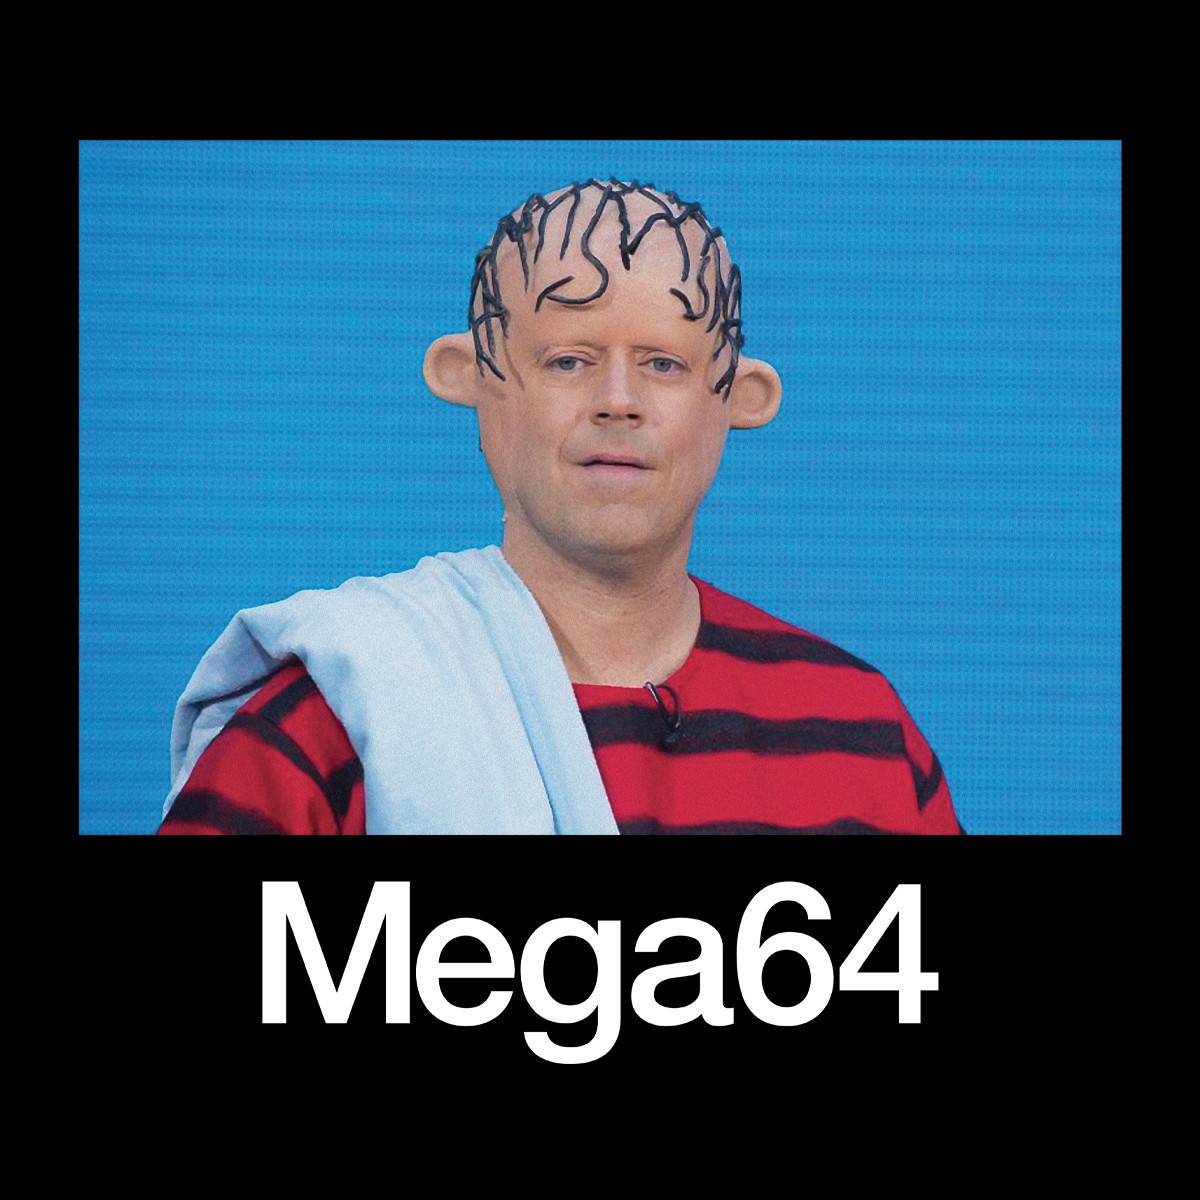 The Mega64 Shirt (PREORDER)